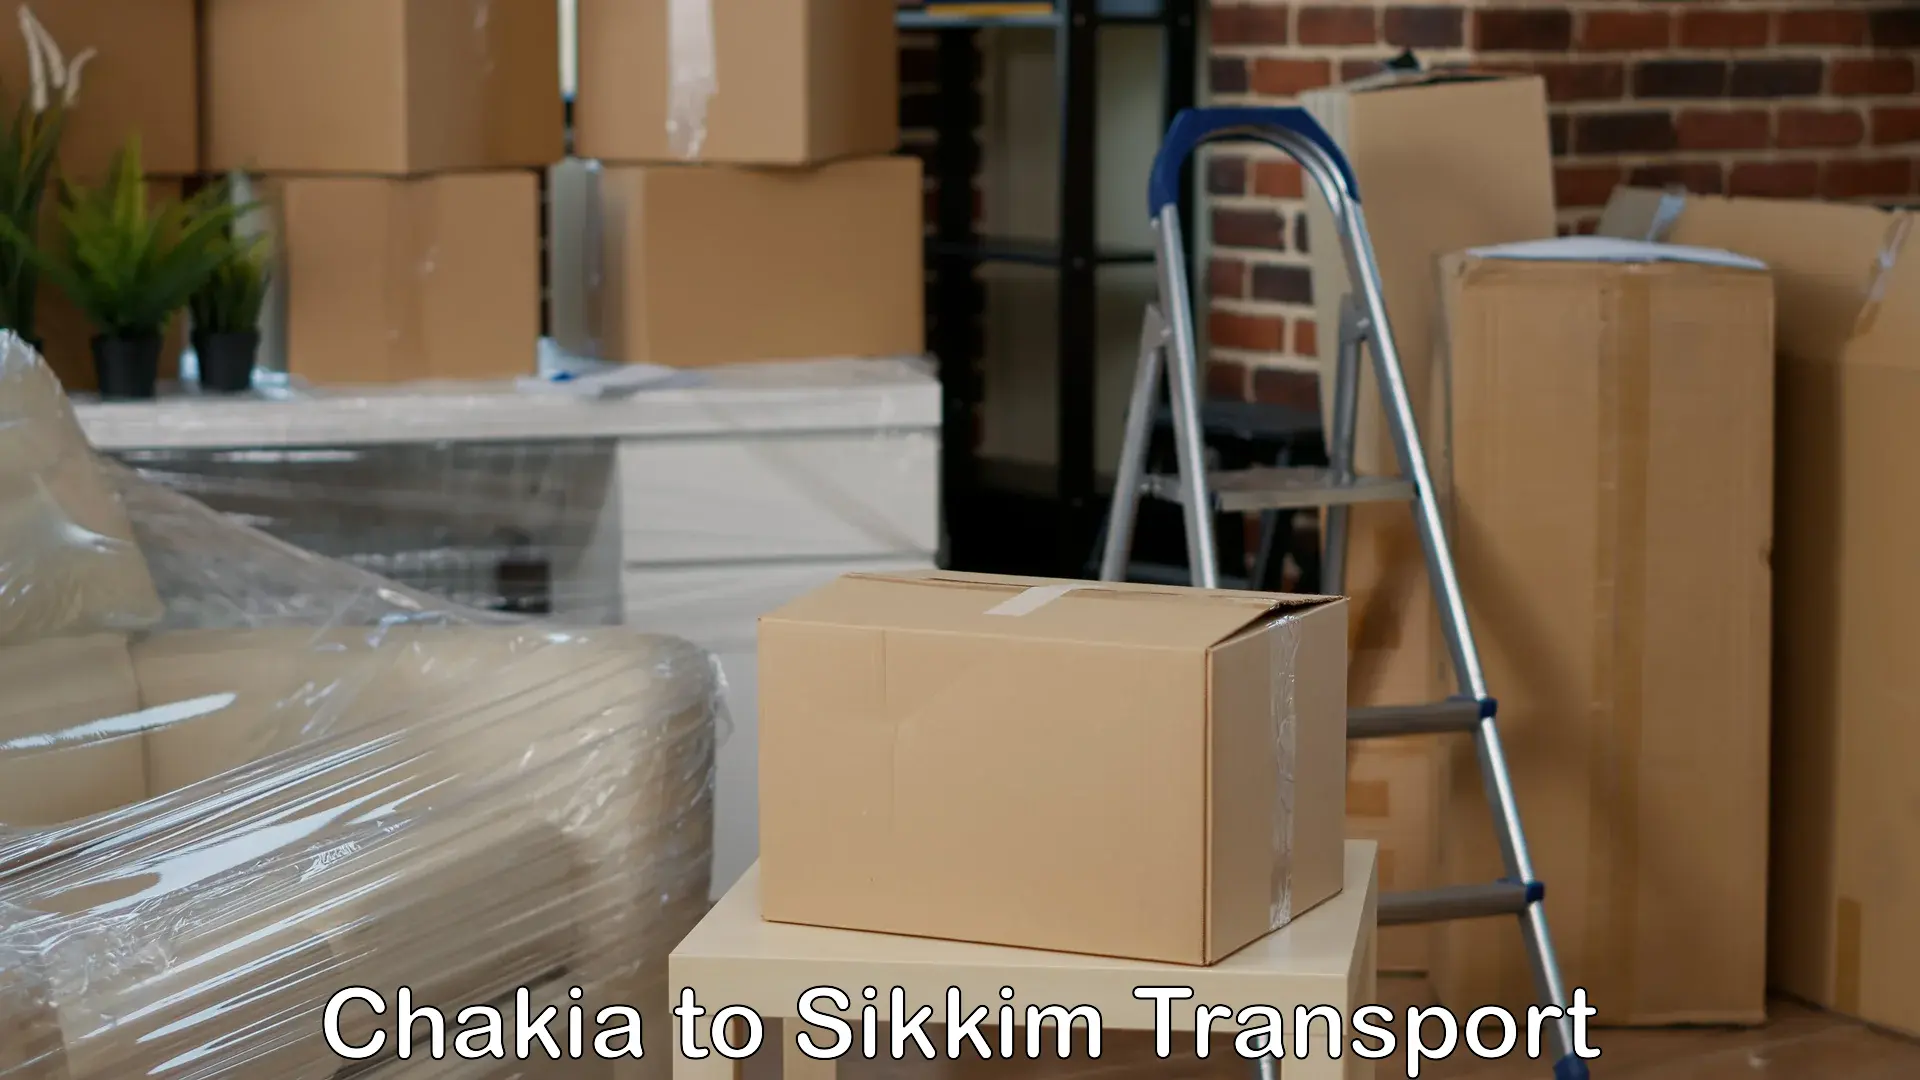 Two wheeler transport services Chakia to Sikkim